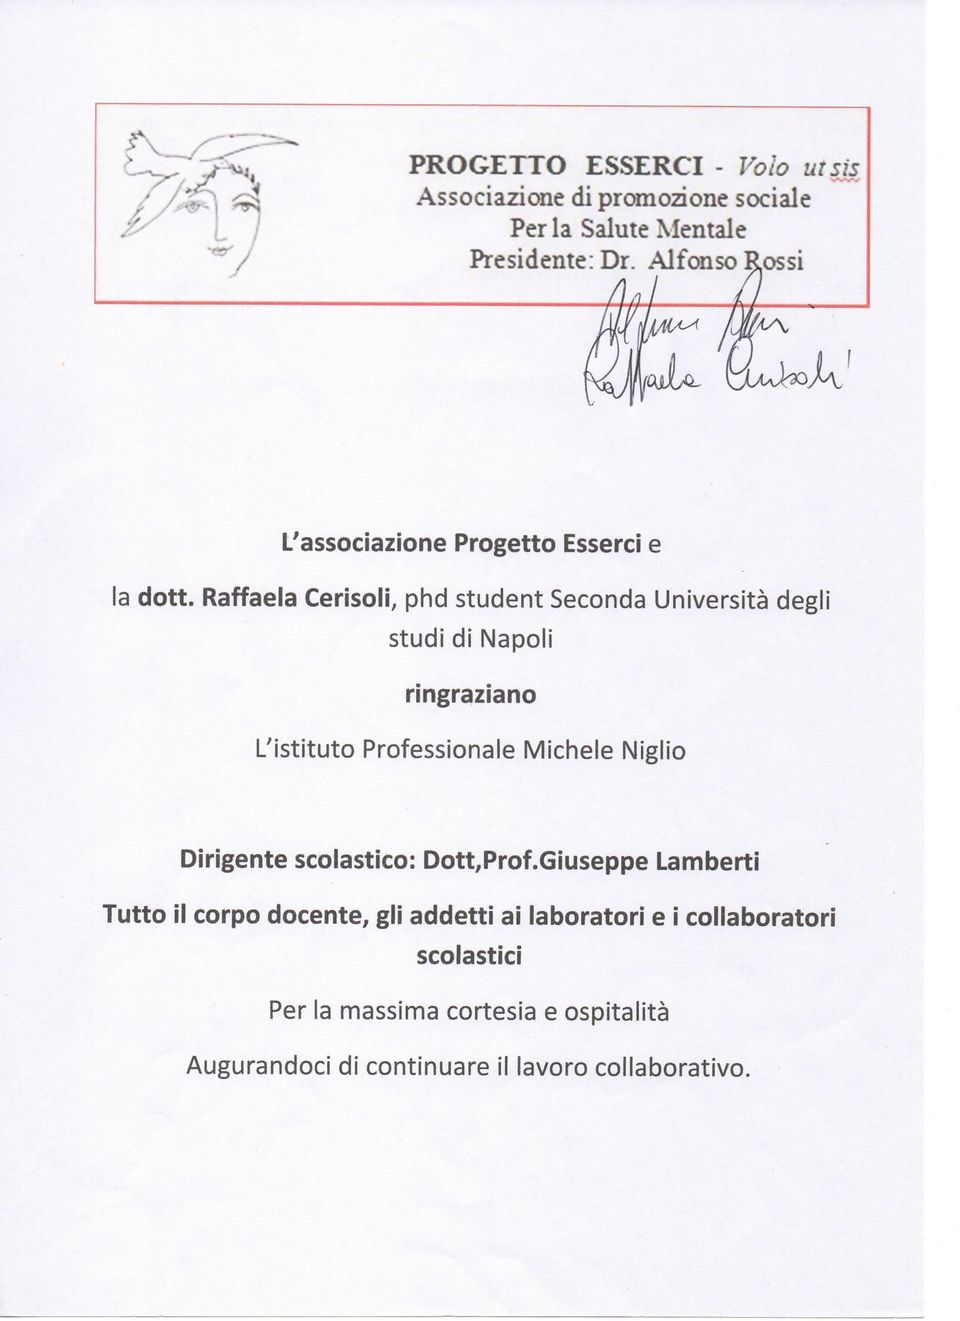 Raffaela Cerisoli, phd student Seconda Università degli studi di Napoli ringraziano L'istituto Professionale Michele Niglio